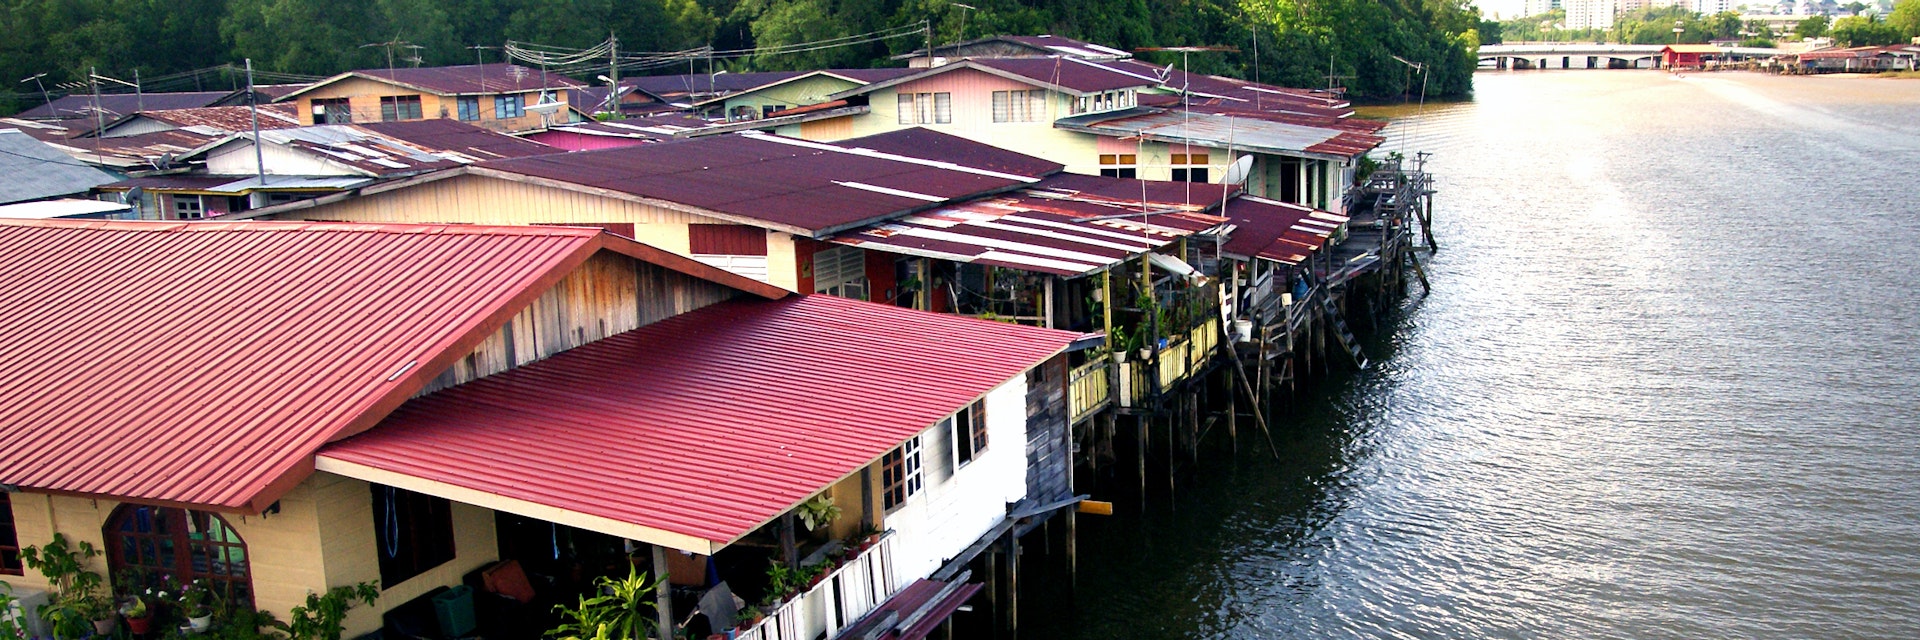 Brunei water village.